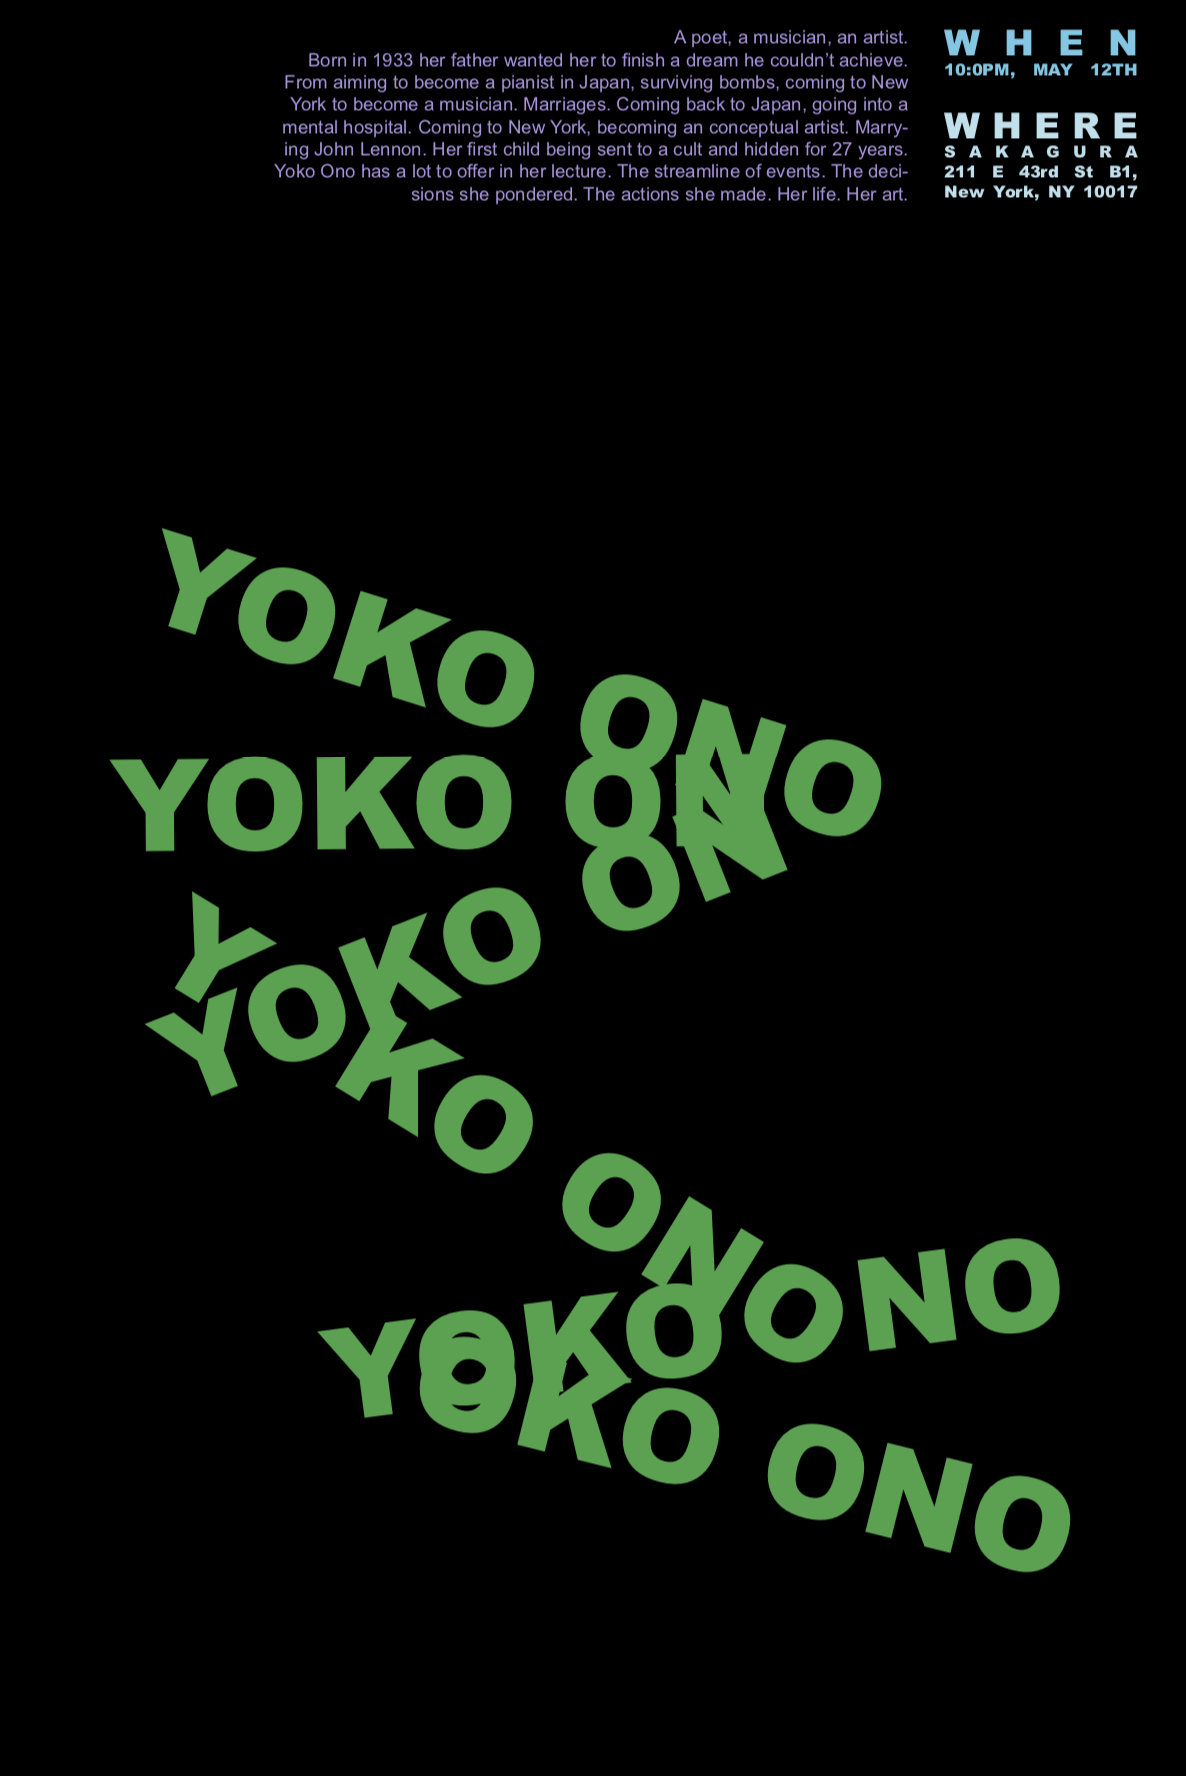 YOKO ONO